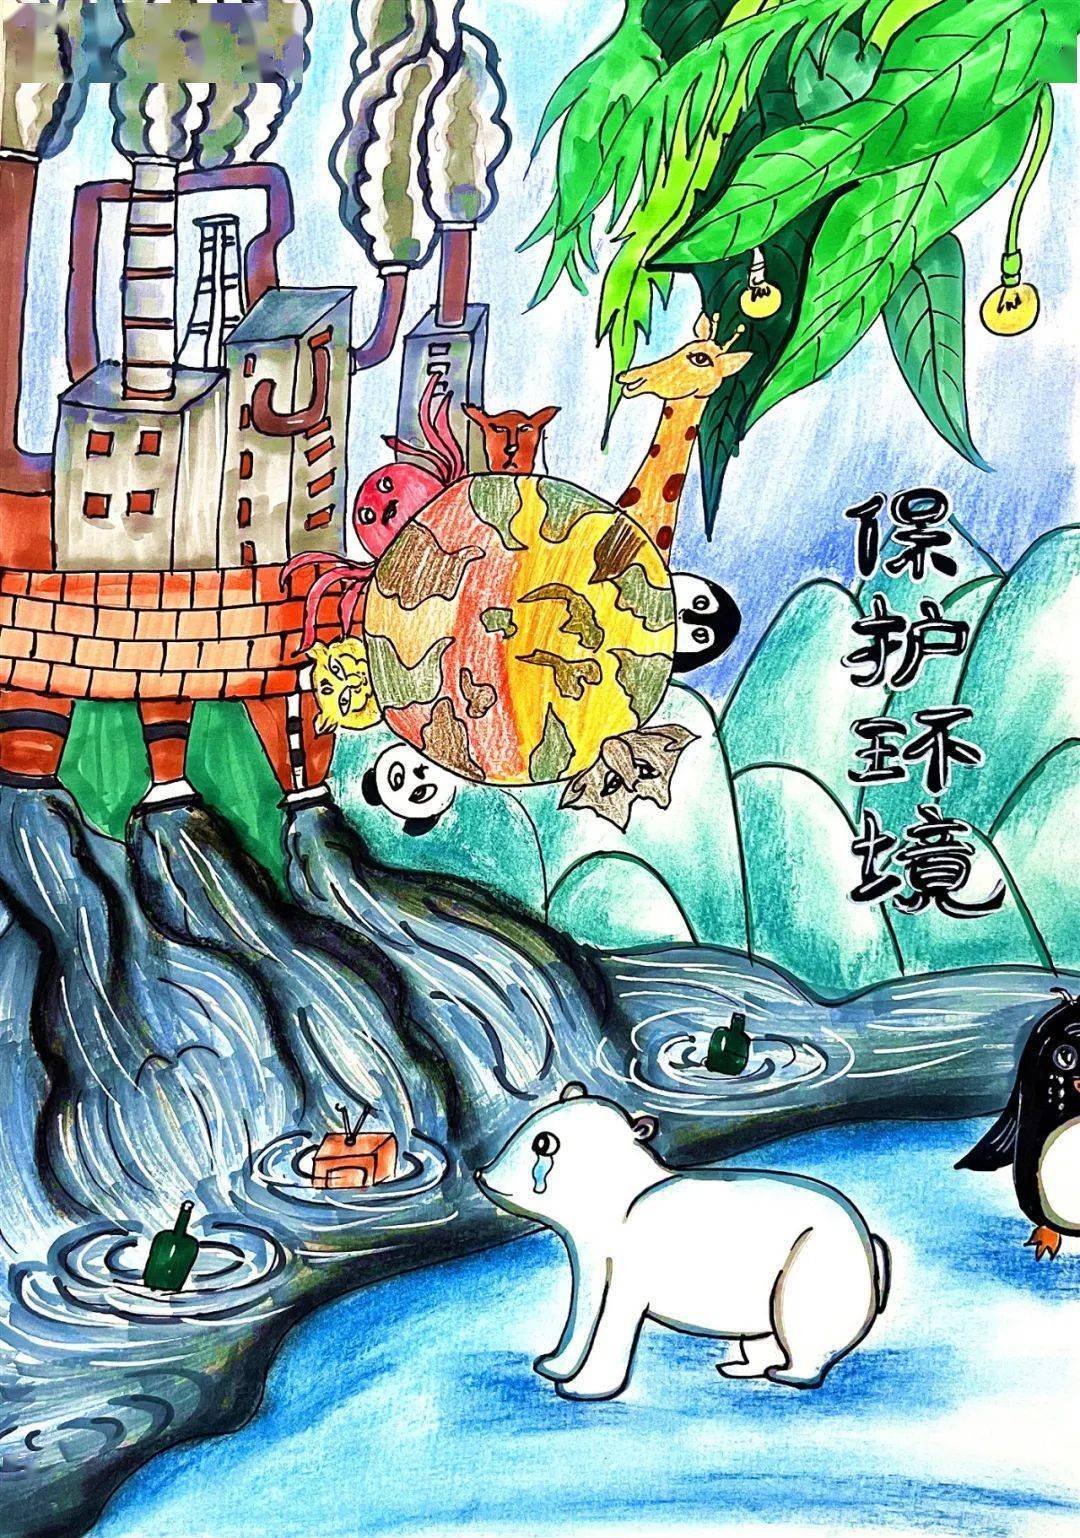 童心绘环保丨全市中小学生环保绘画大赛作品赏析(22)